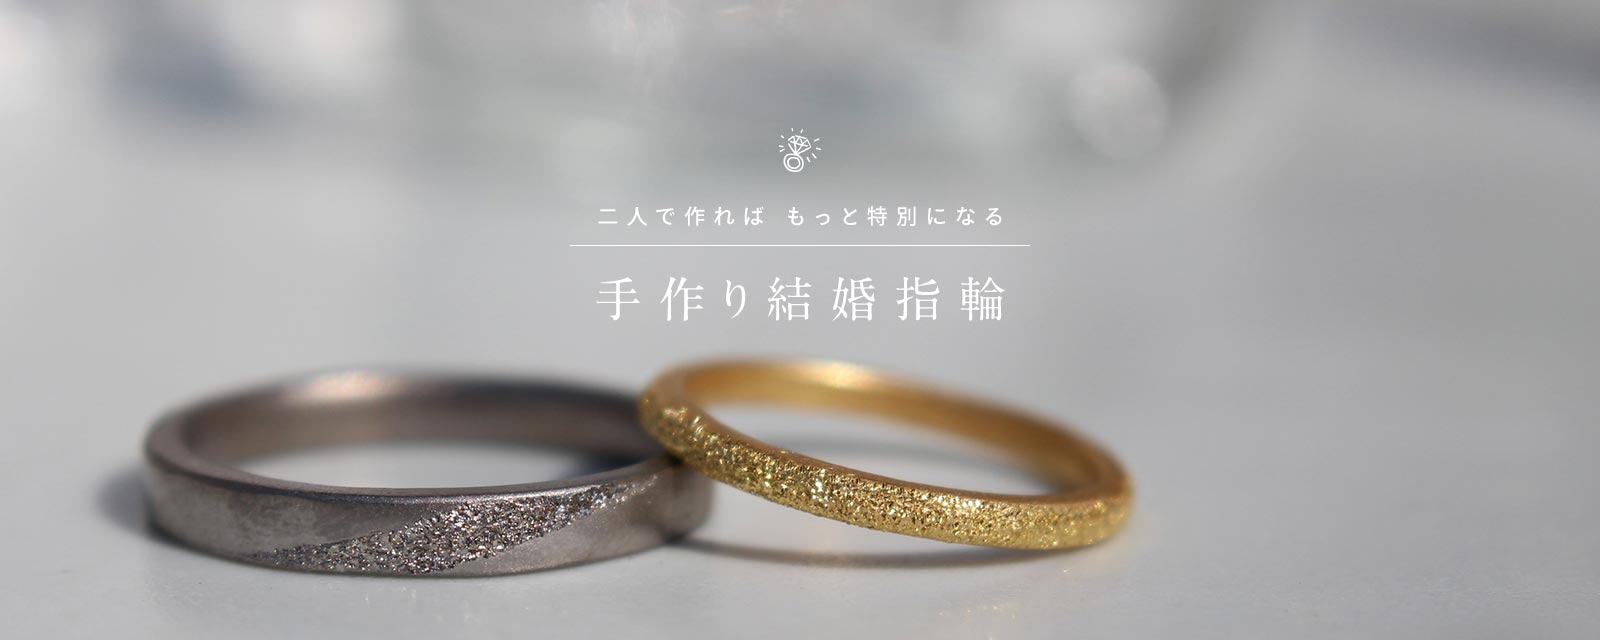 福岡 結婚指輪婚約指輪を手作りできるお店 手作り指輪のお店m Studio